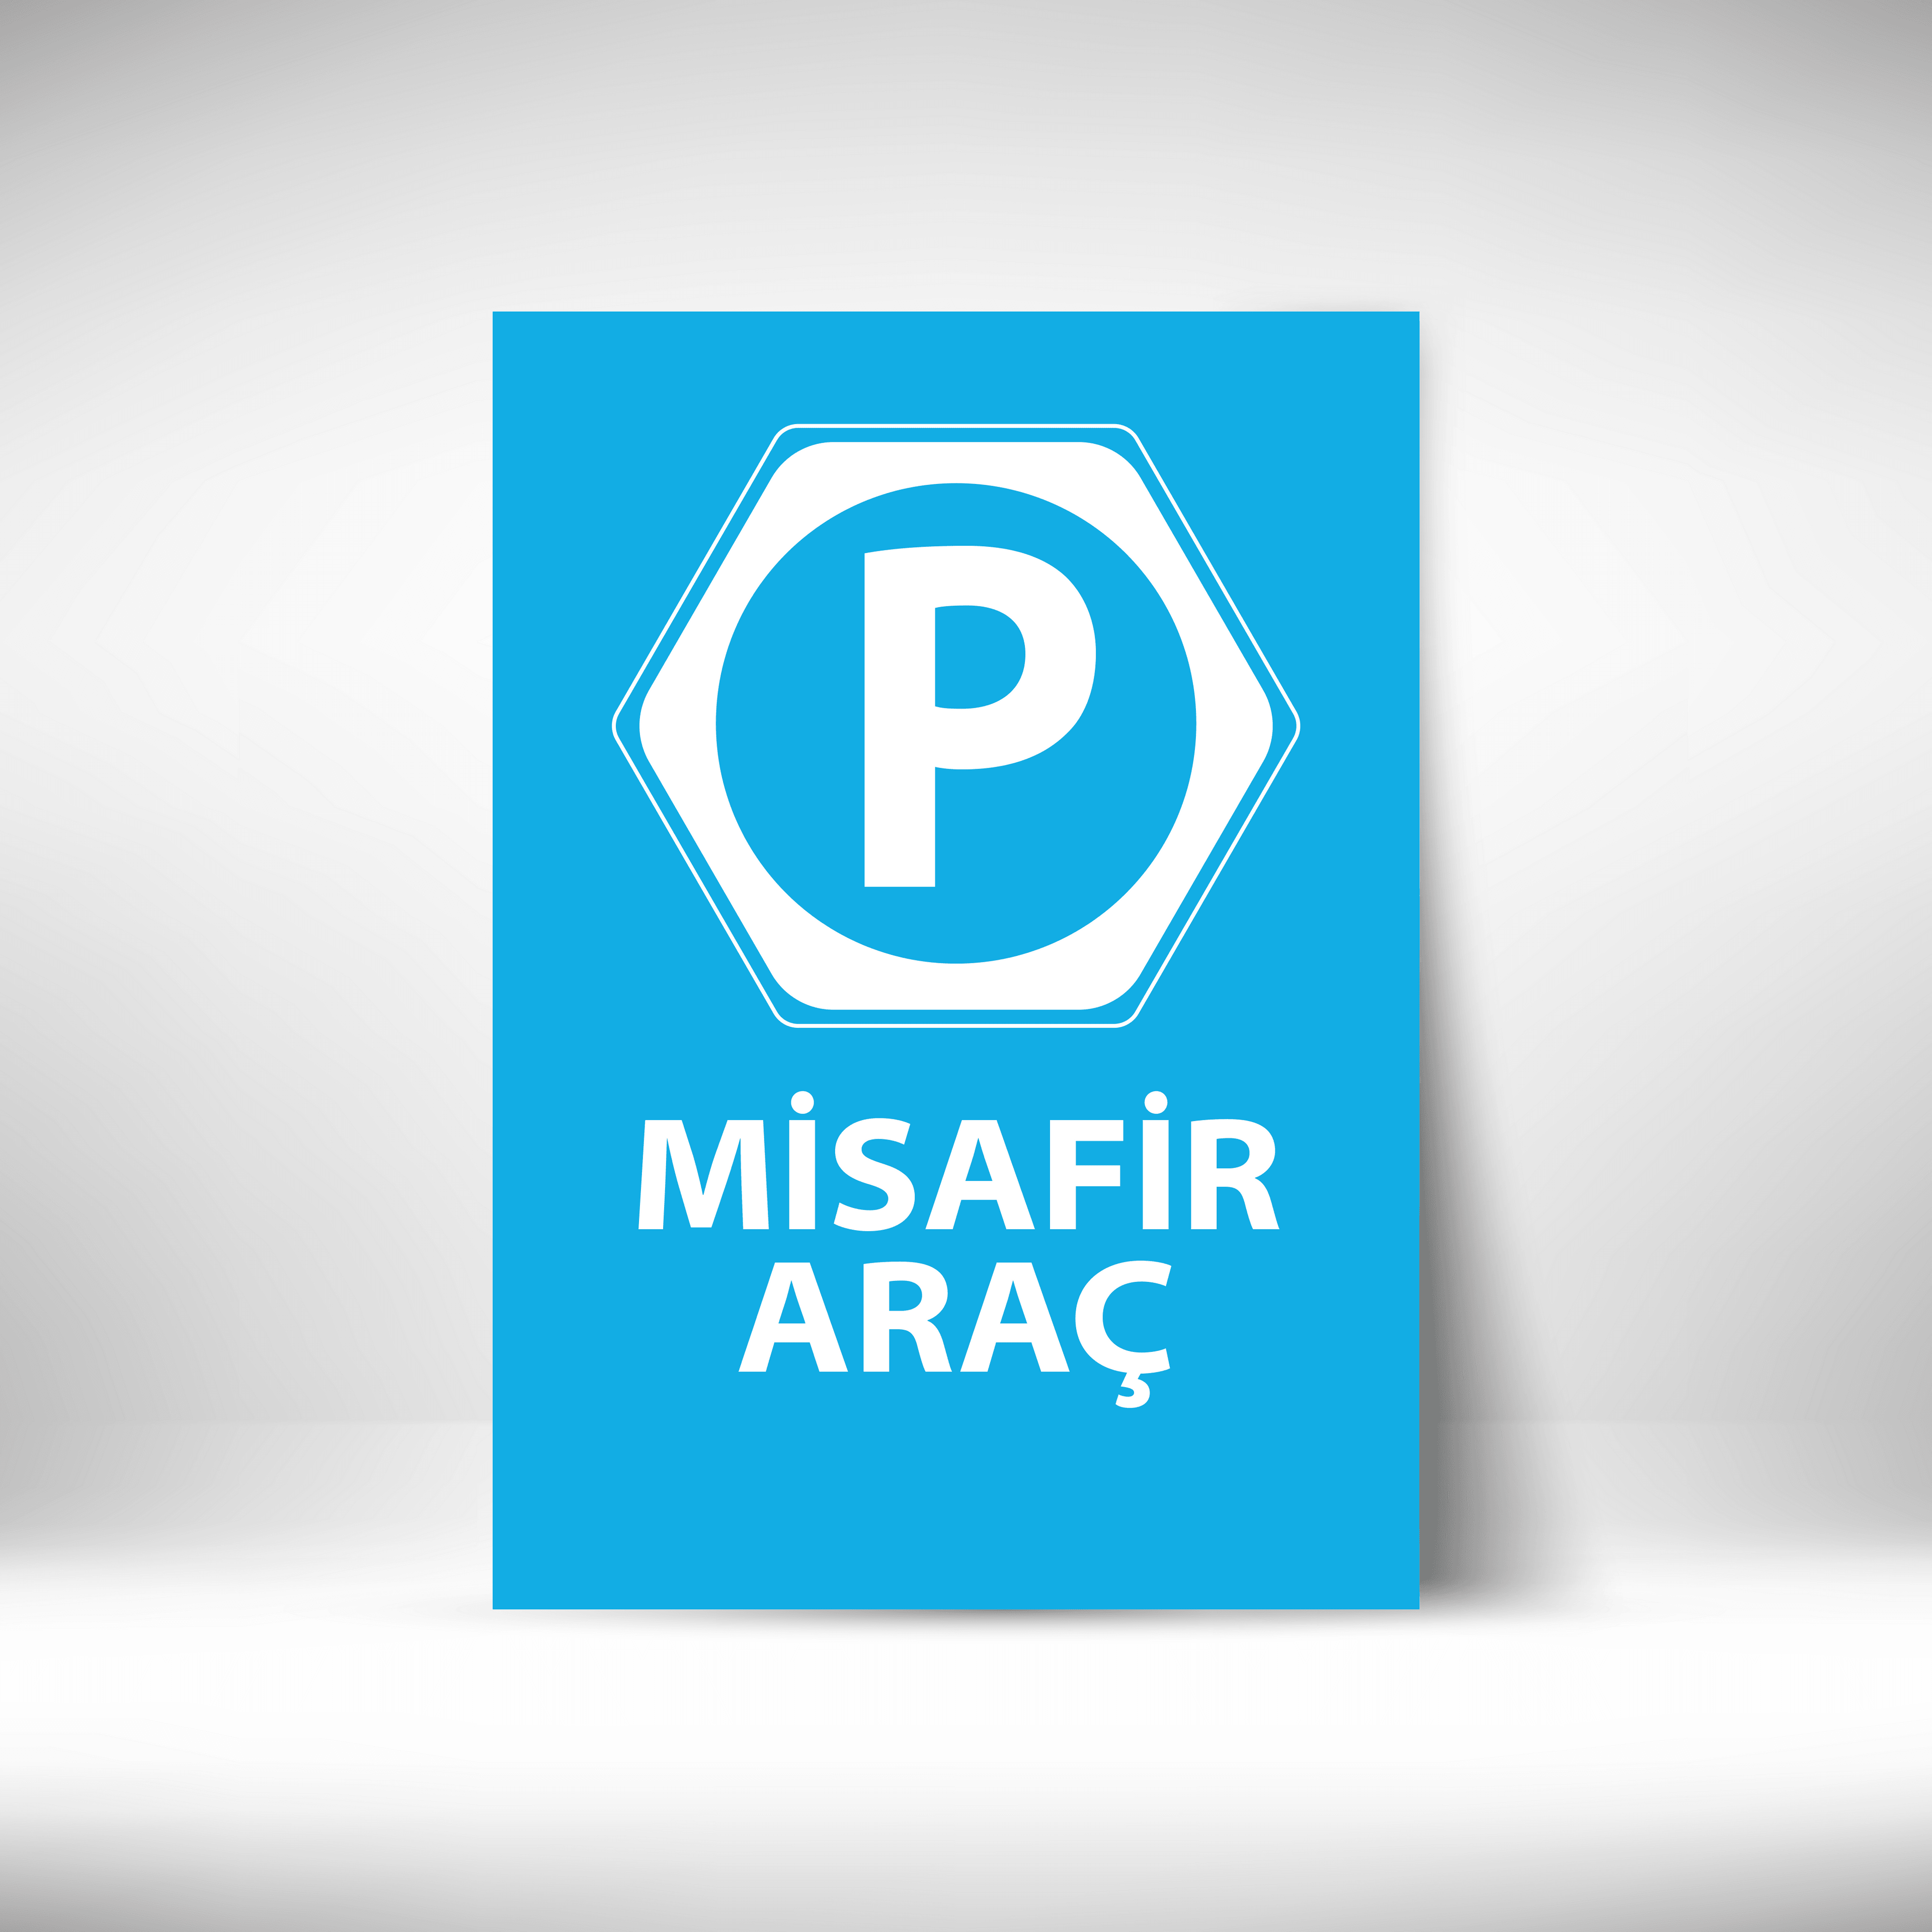 Misafir Araç main variant image